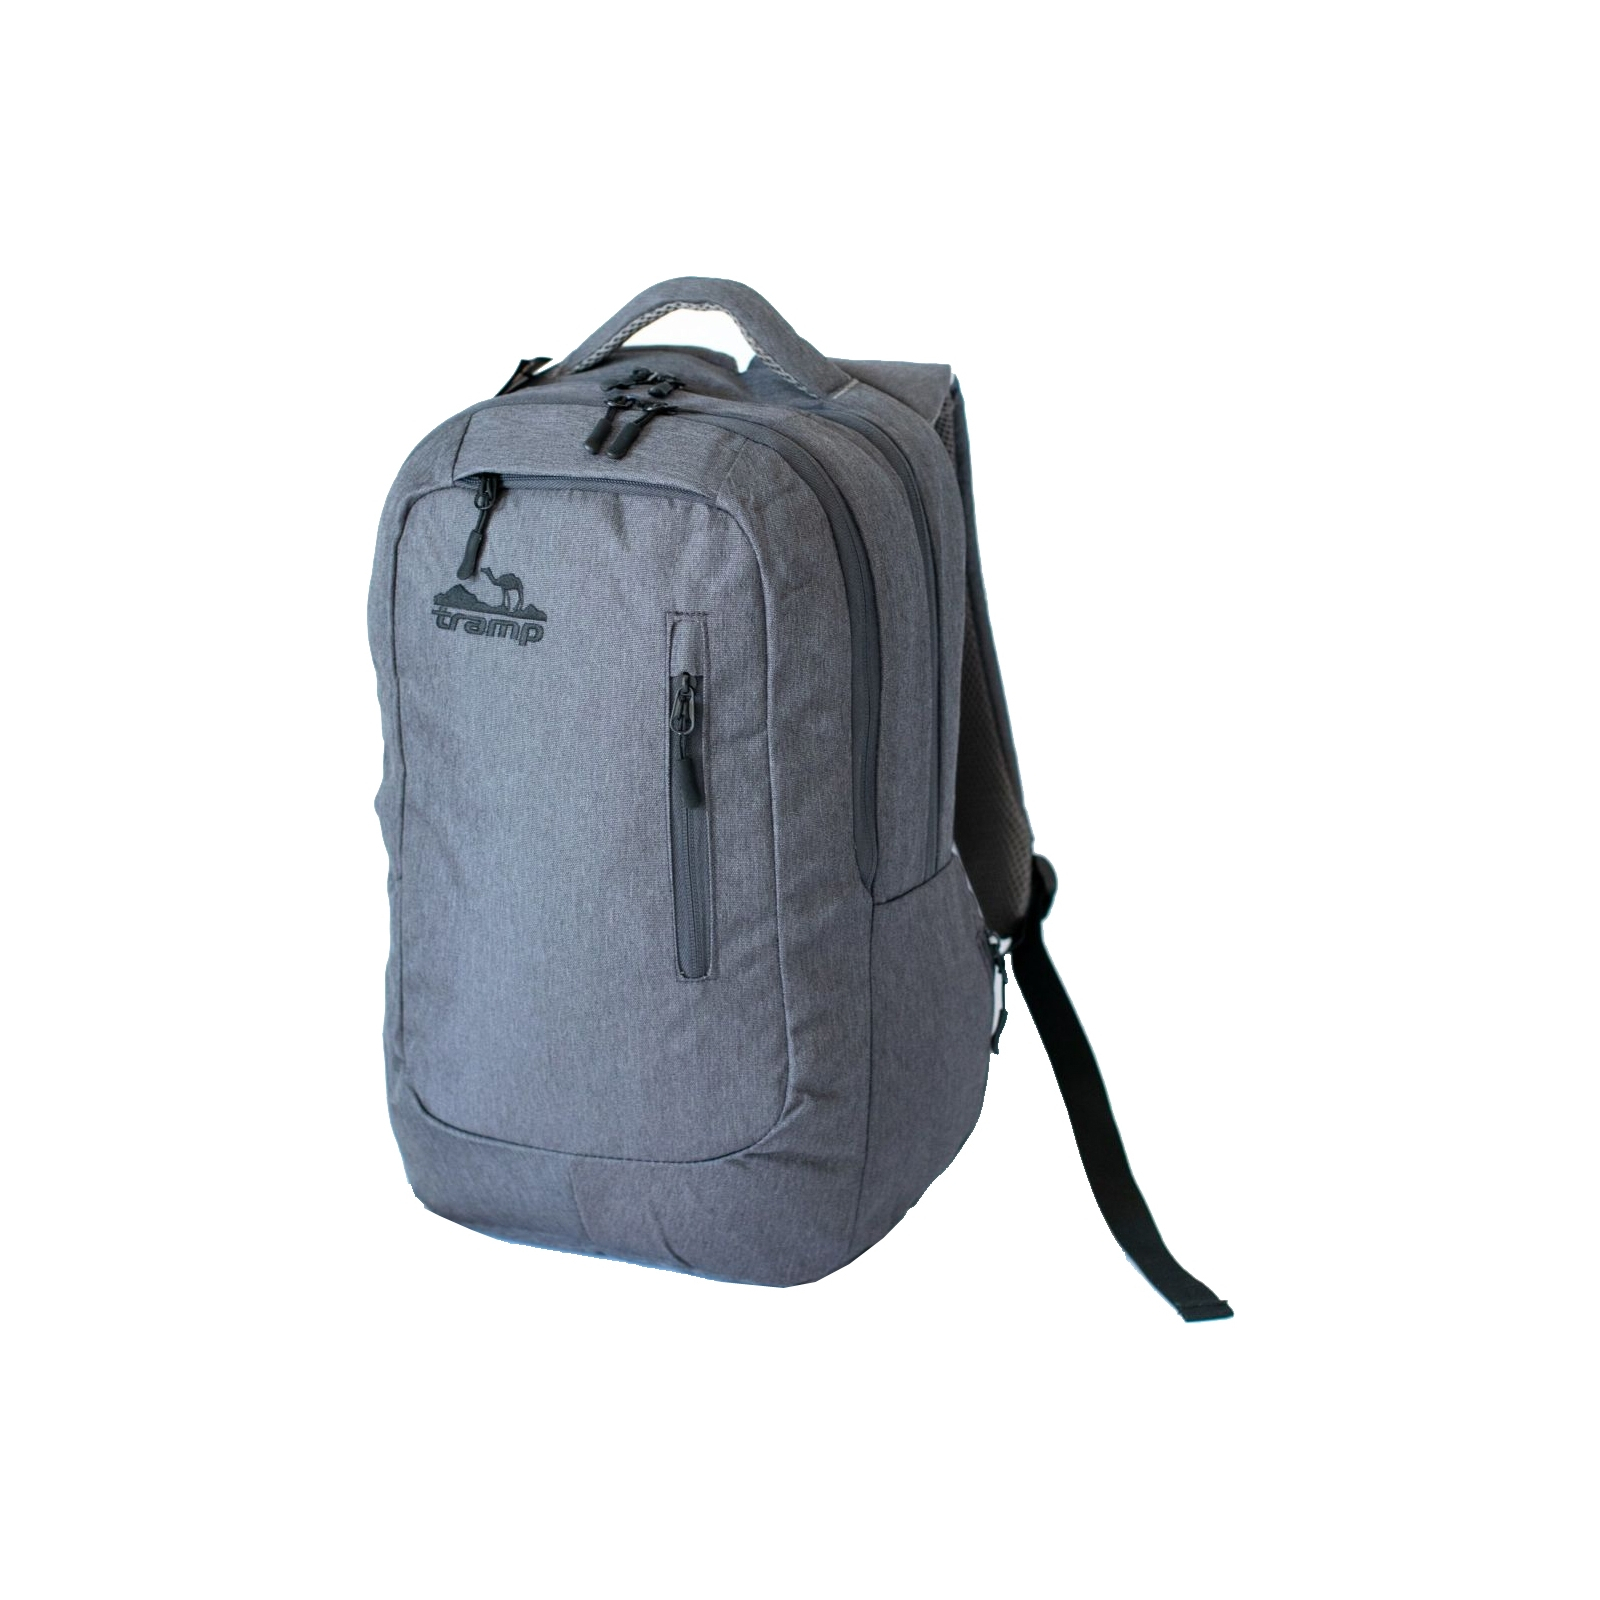 Рюкзак туристический Tramp Urby серый 25л (TRP-038-grey)